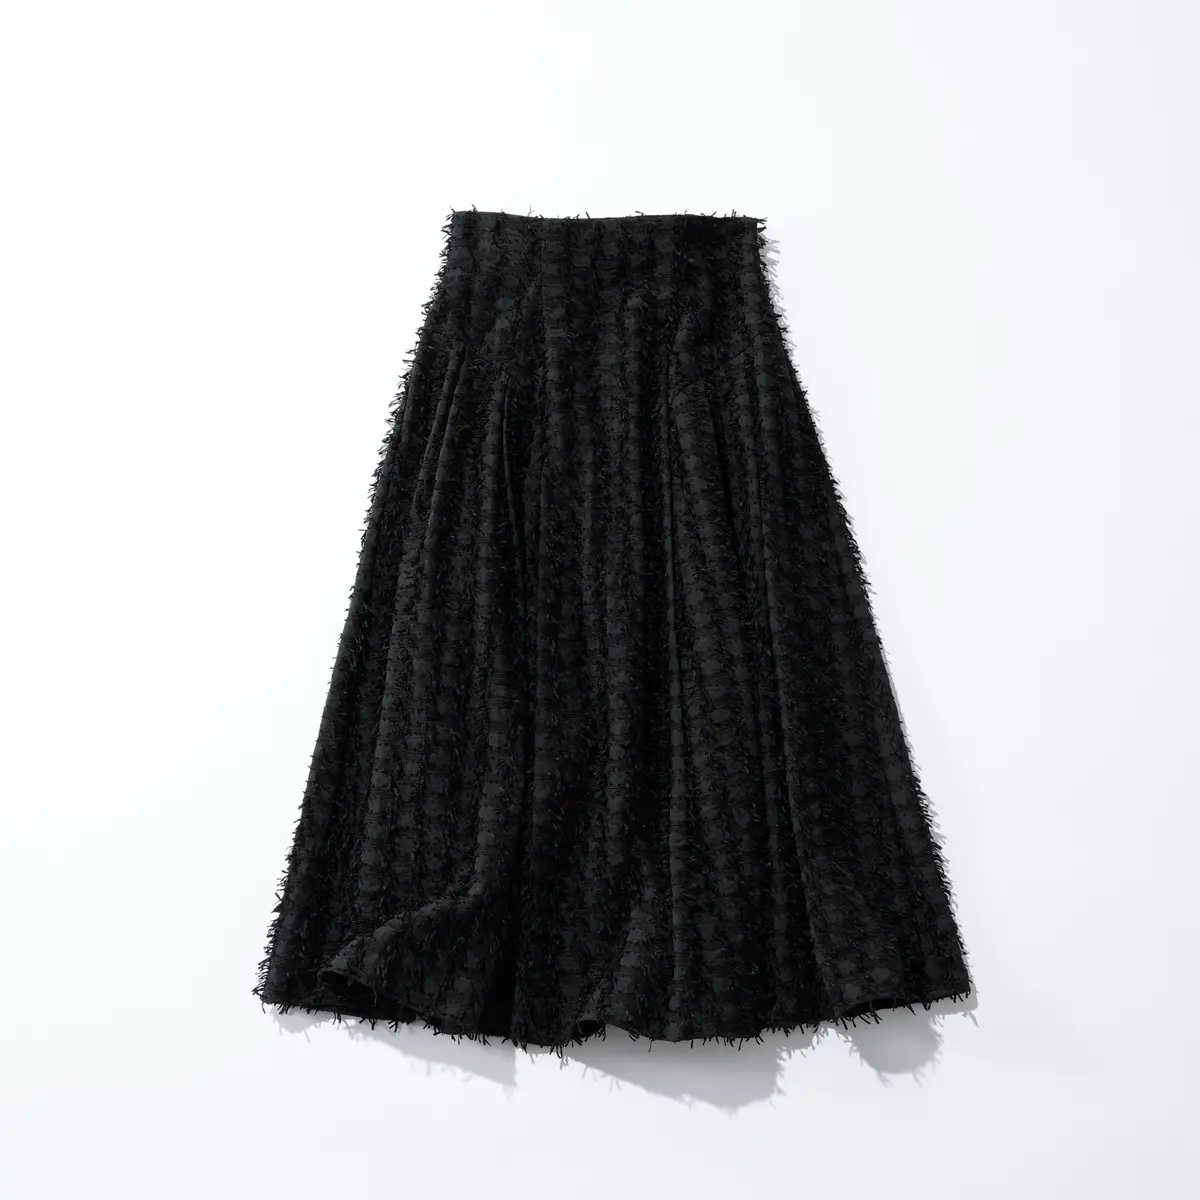 黒のフレアスカート